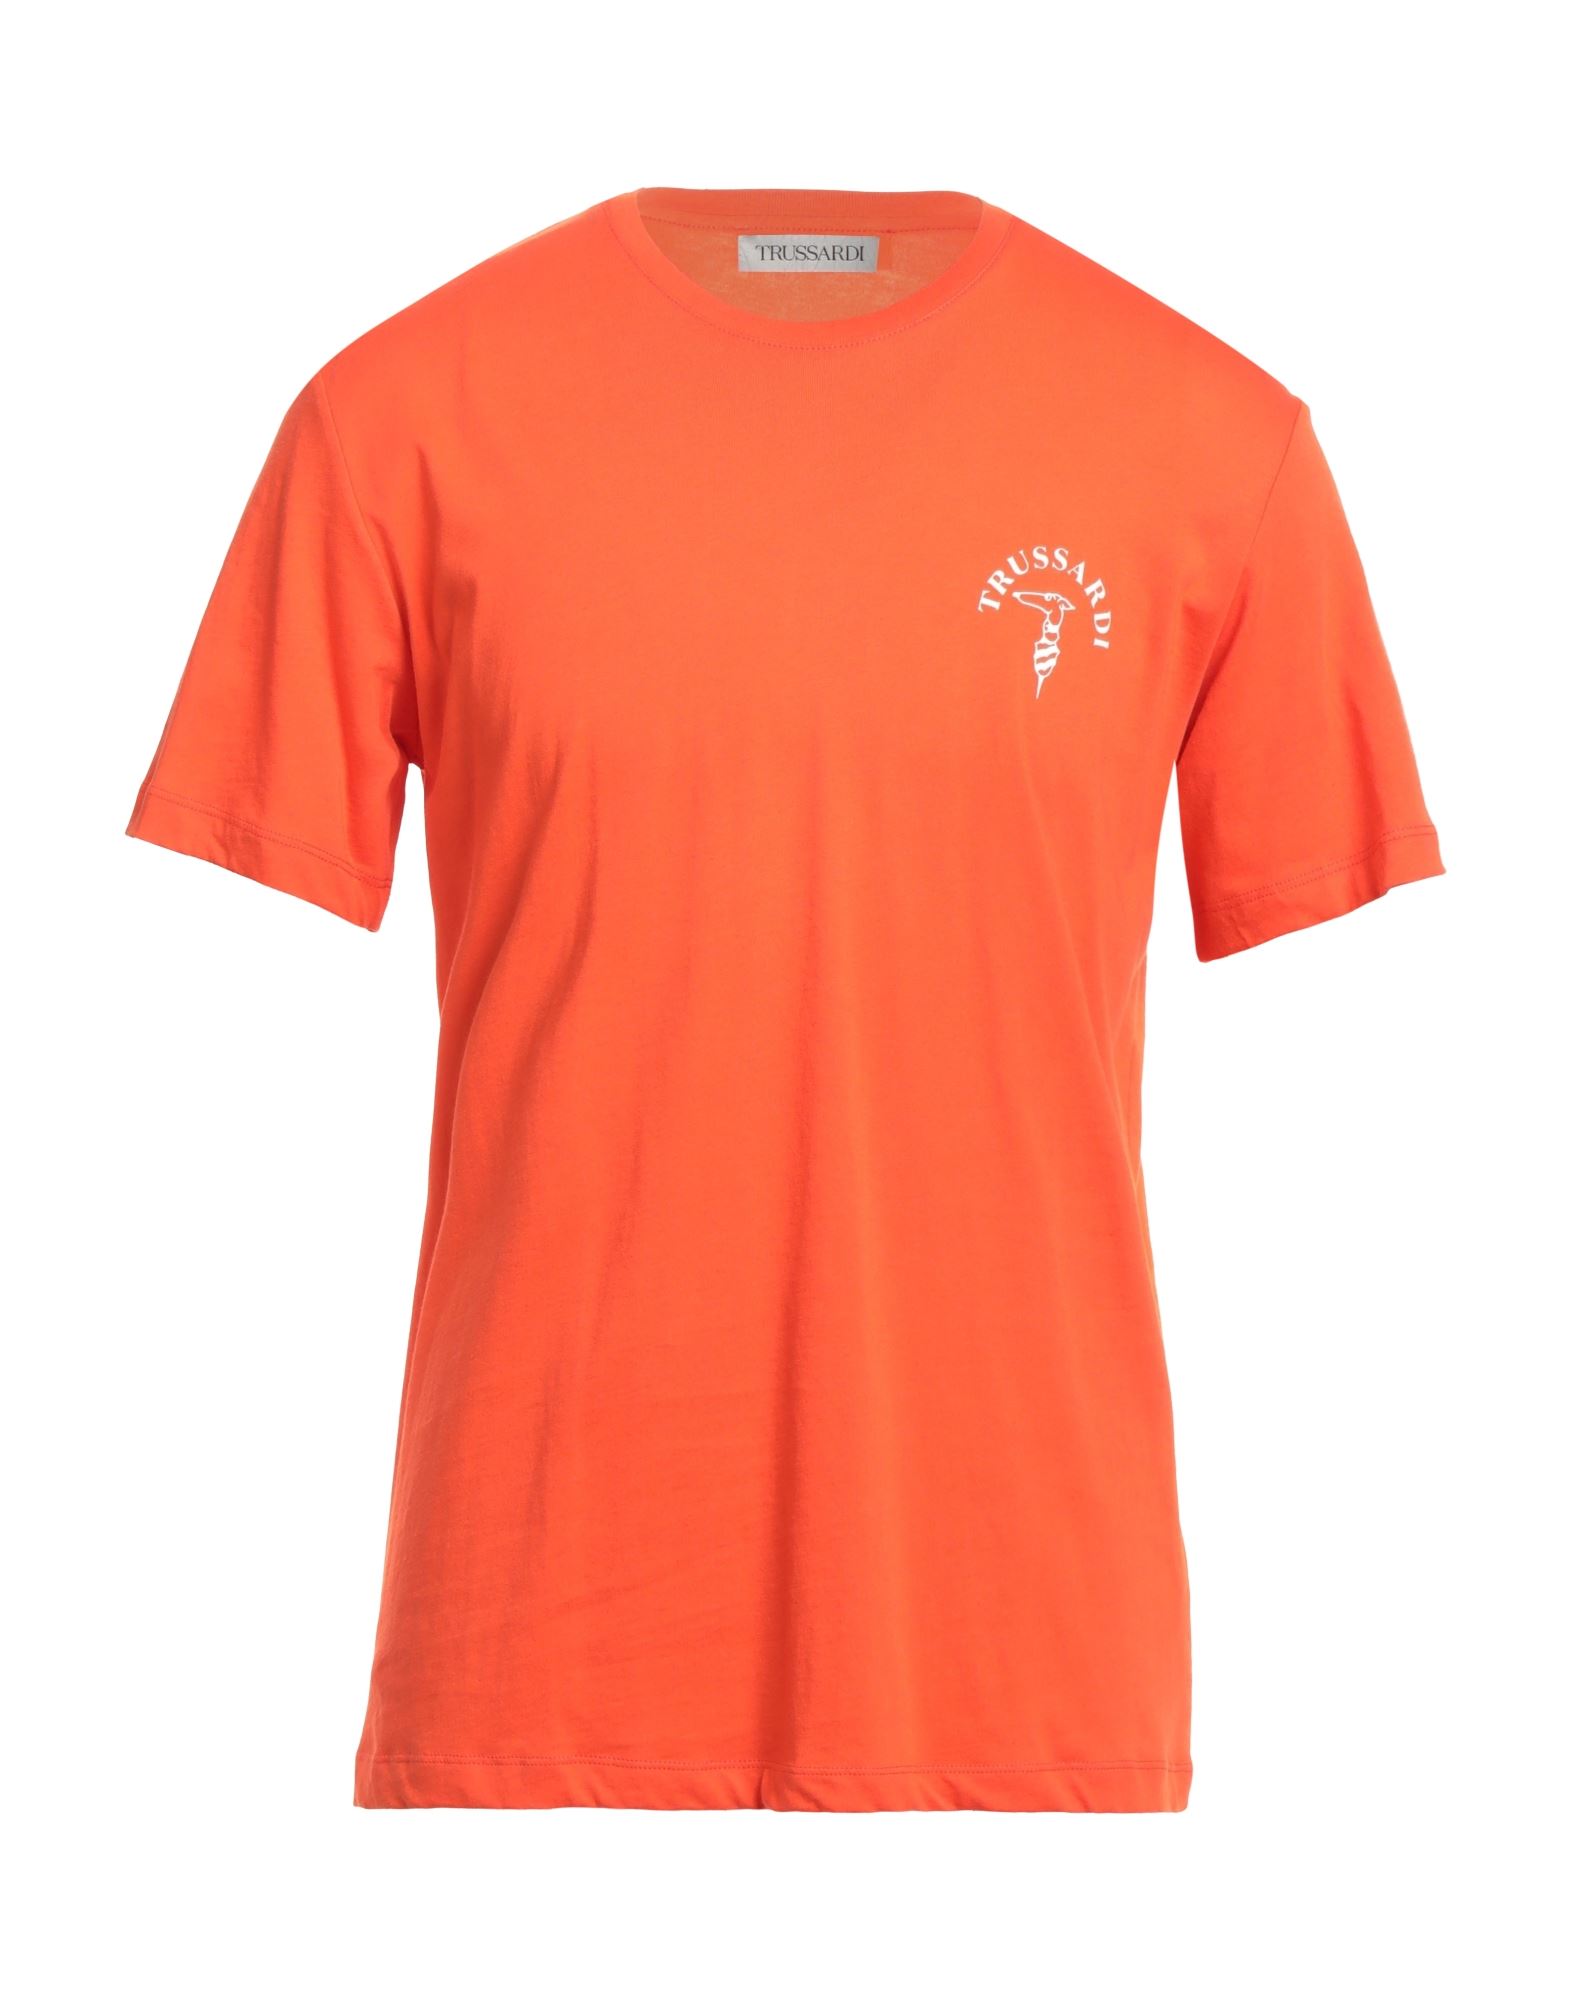 TRUSSARDI T-shirts Herren Orange von TRUSSARDI